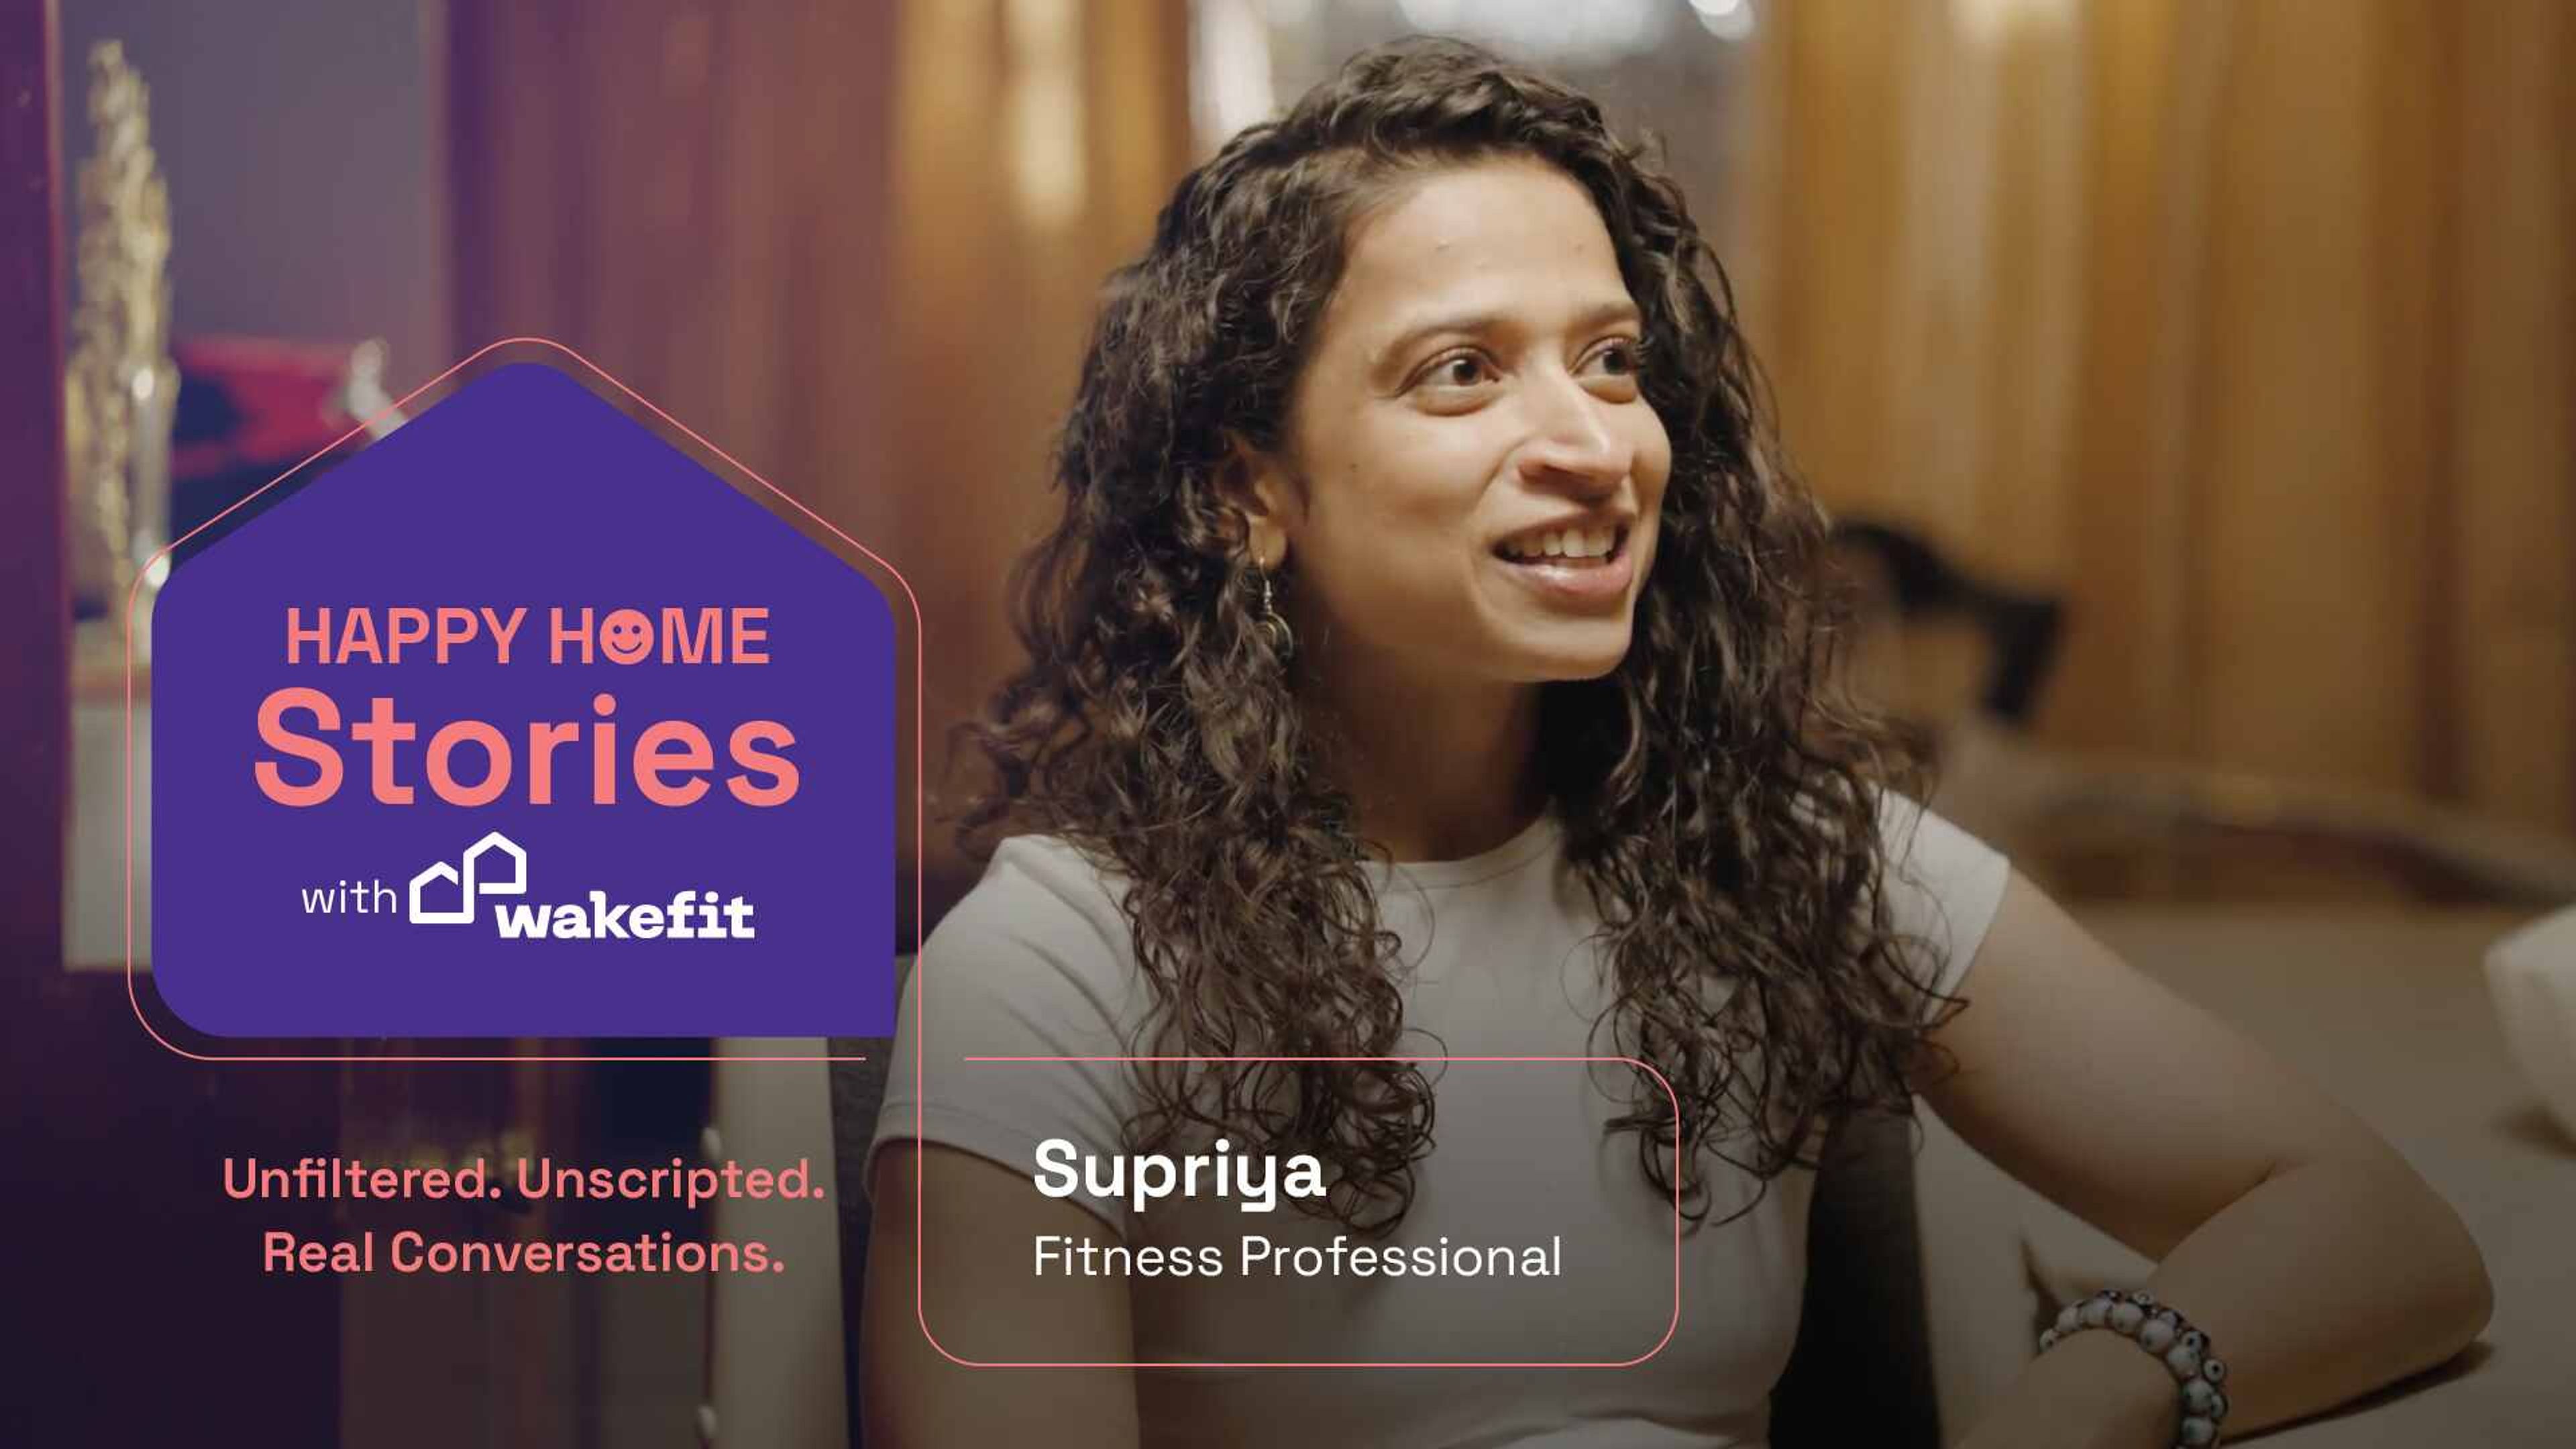 Supriya | Fitness Professional